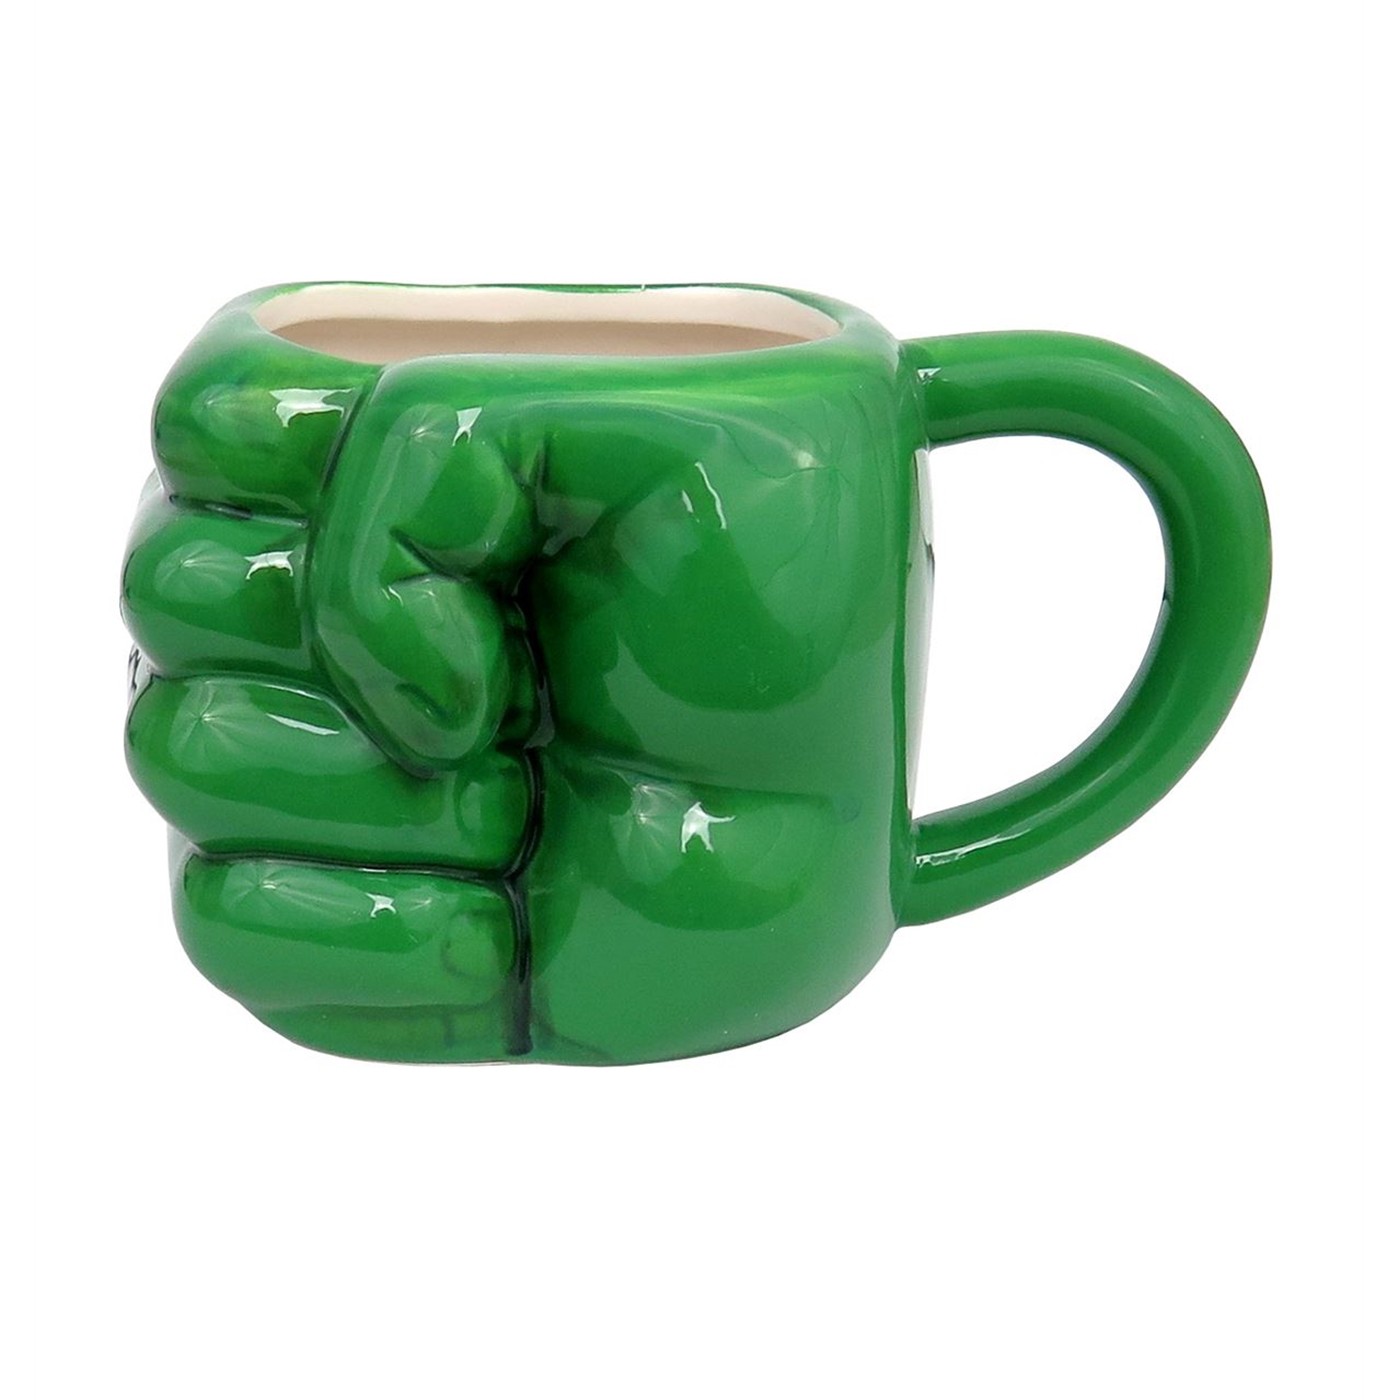 Hulk Fist Smash Scupled Mug